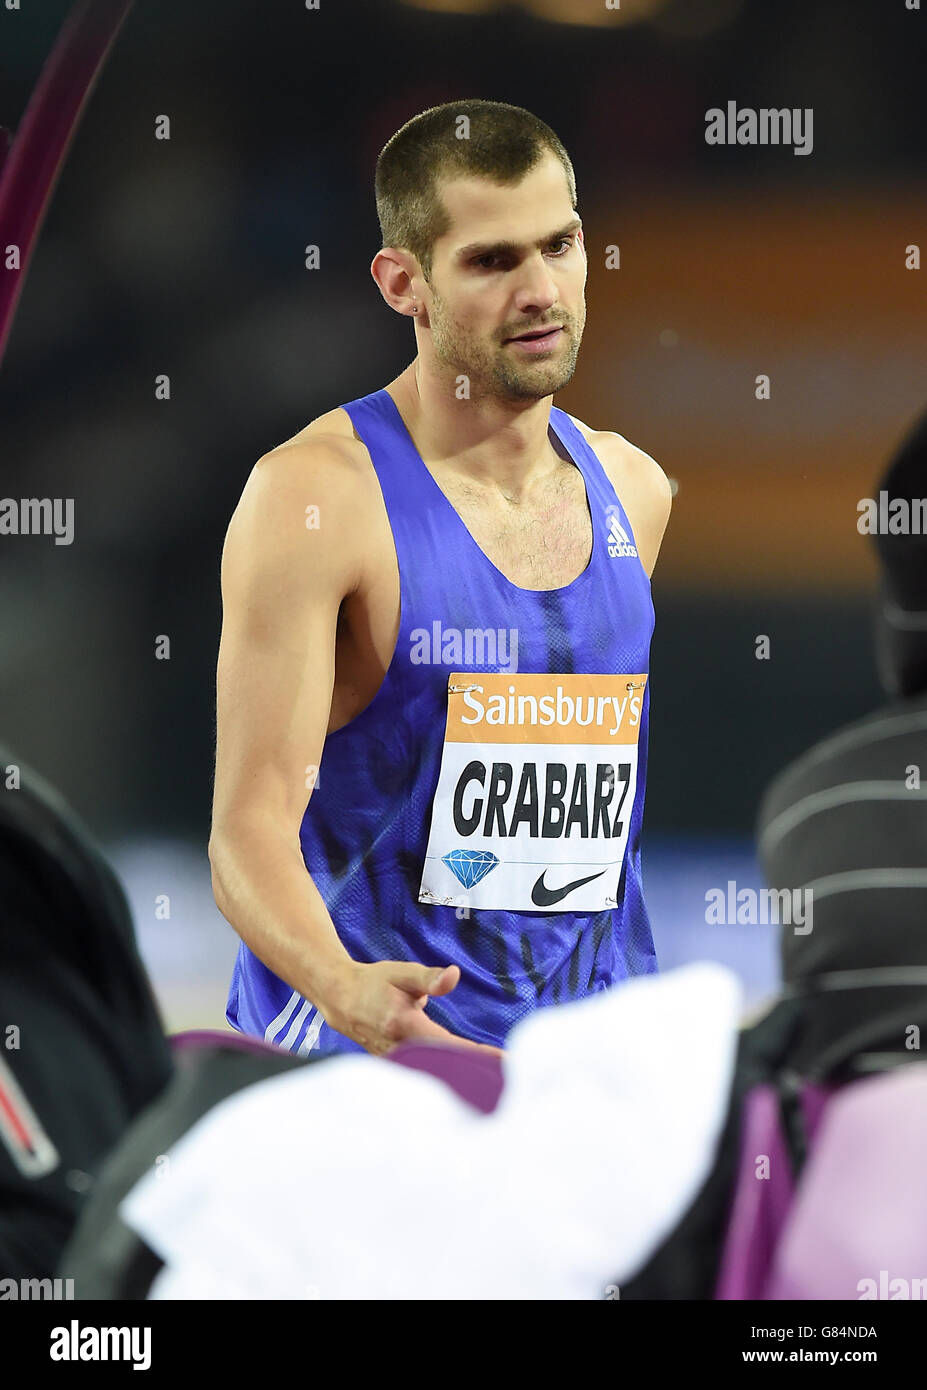 Robbie Grabarz, en Grande-Bretagne, dans le saut masculin pendant la première journée des Jeux d'anniversaire de Sainsbury au stade du parc olympique Queen Elizabeth, Londres. Banque D'Images